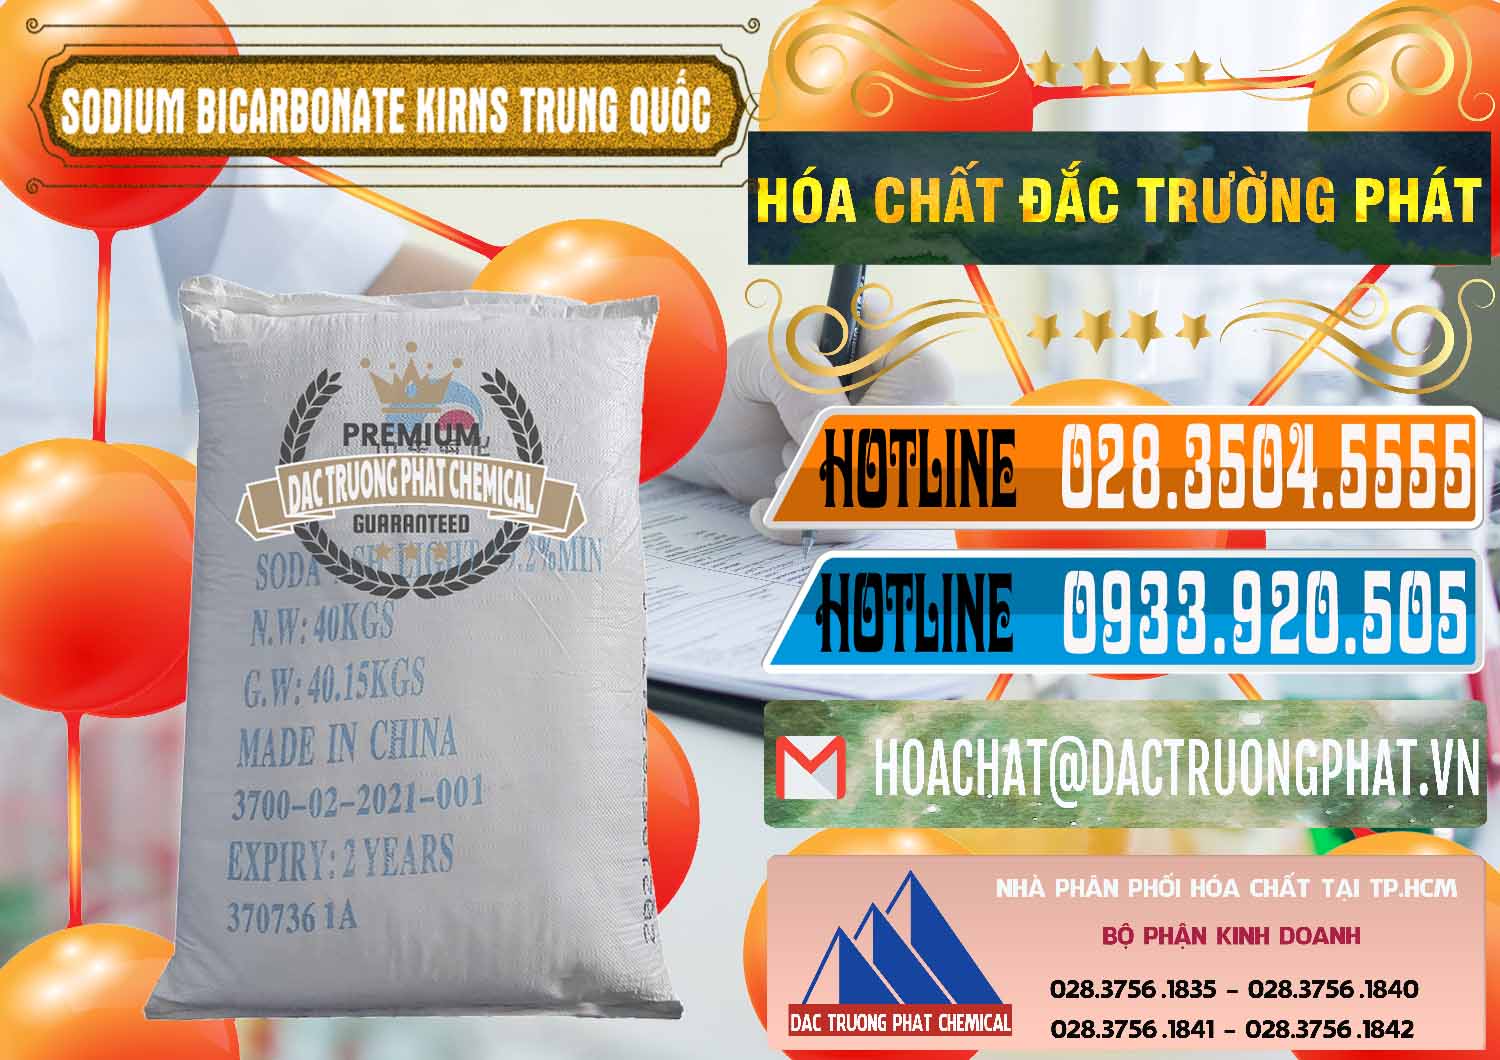 Chuyên bán & phân phối Soda Ash Light - NA2CO3 99.2% Shandong Haihua Trung Quốc China - 0253 - Phân phối & cung cấp hóa chất tại TP.HCM - stmp.net